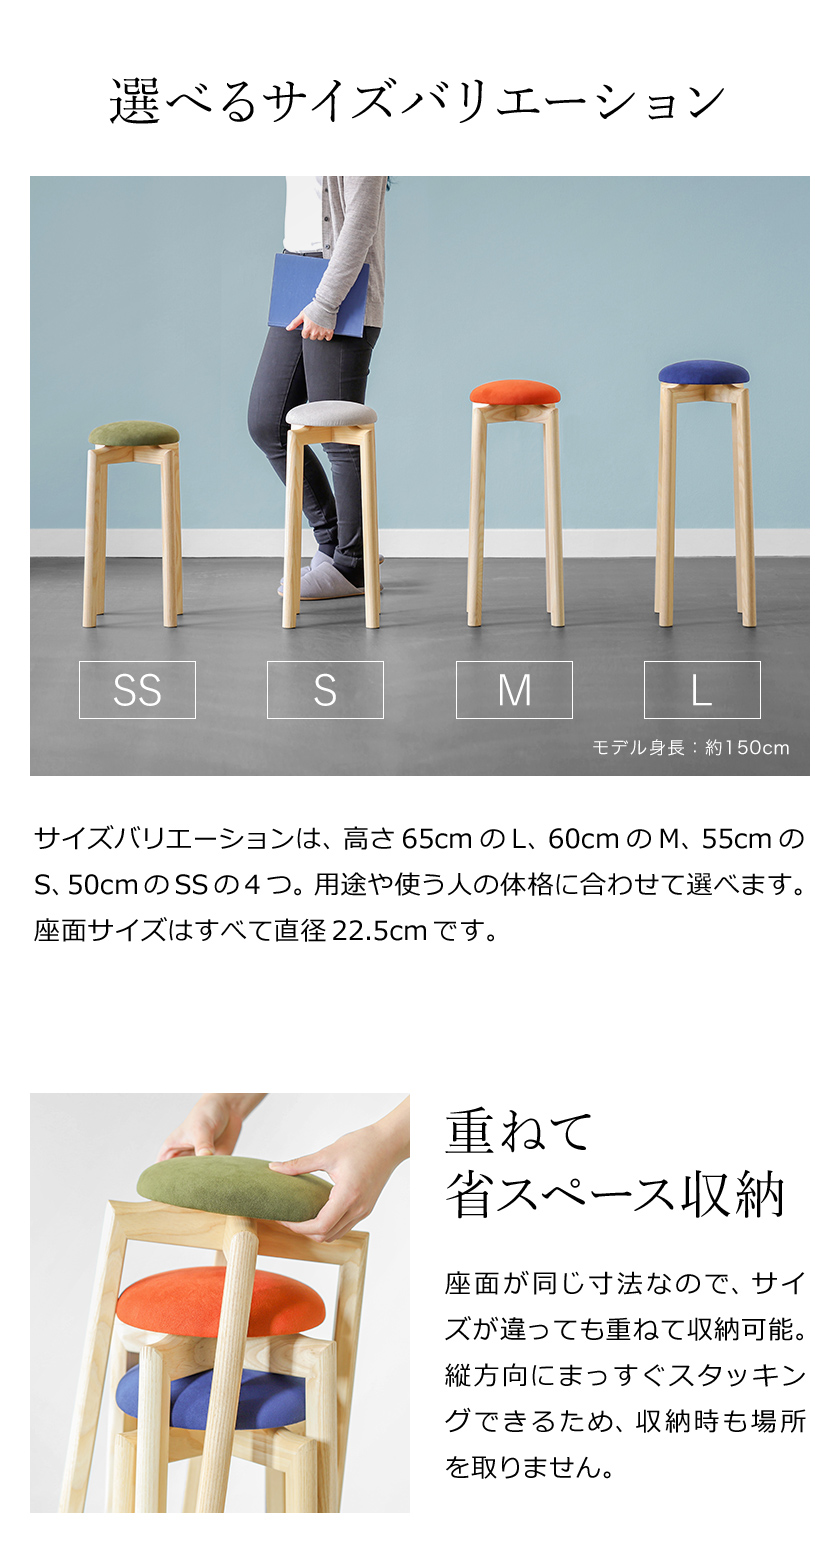 価格は安く 木製スツール 座面30cm×高さ65cm 丸椅子 stool - スツール 